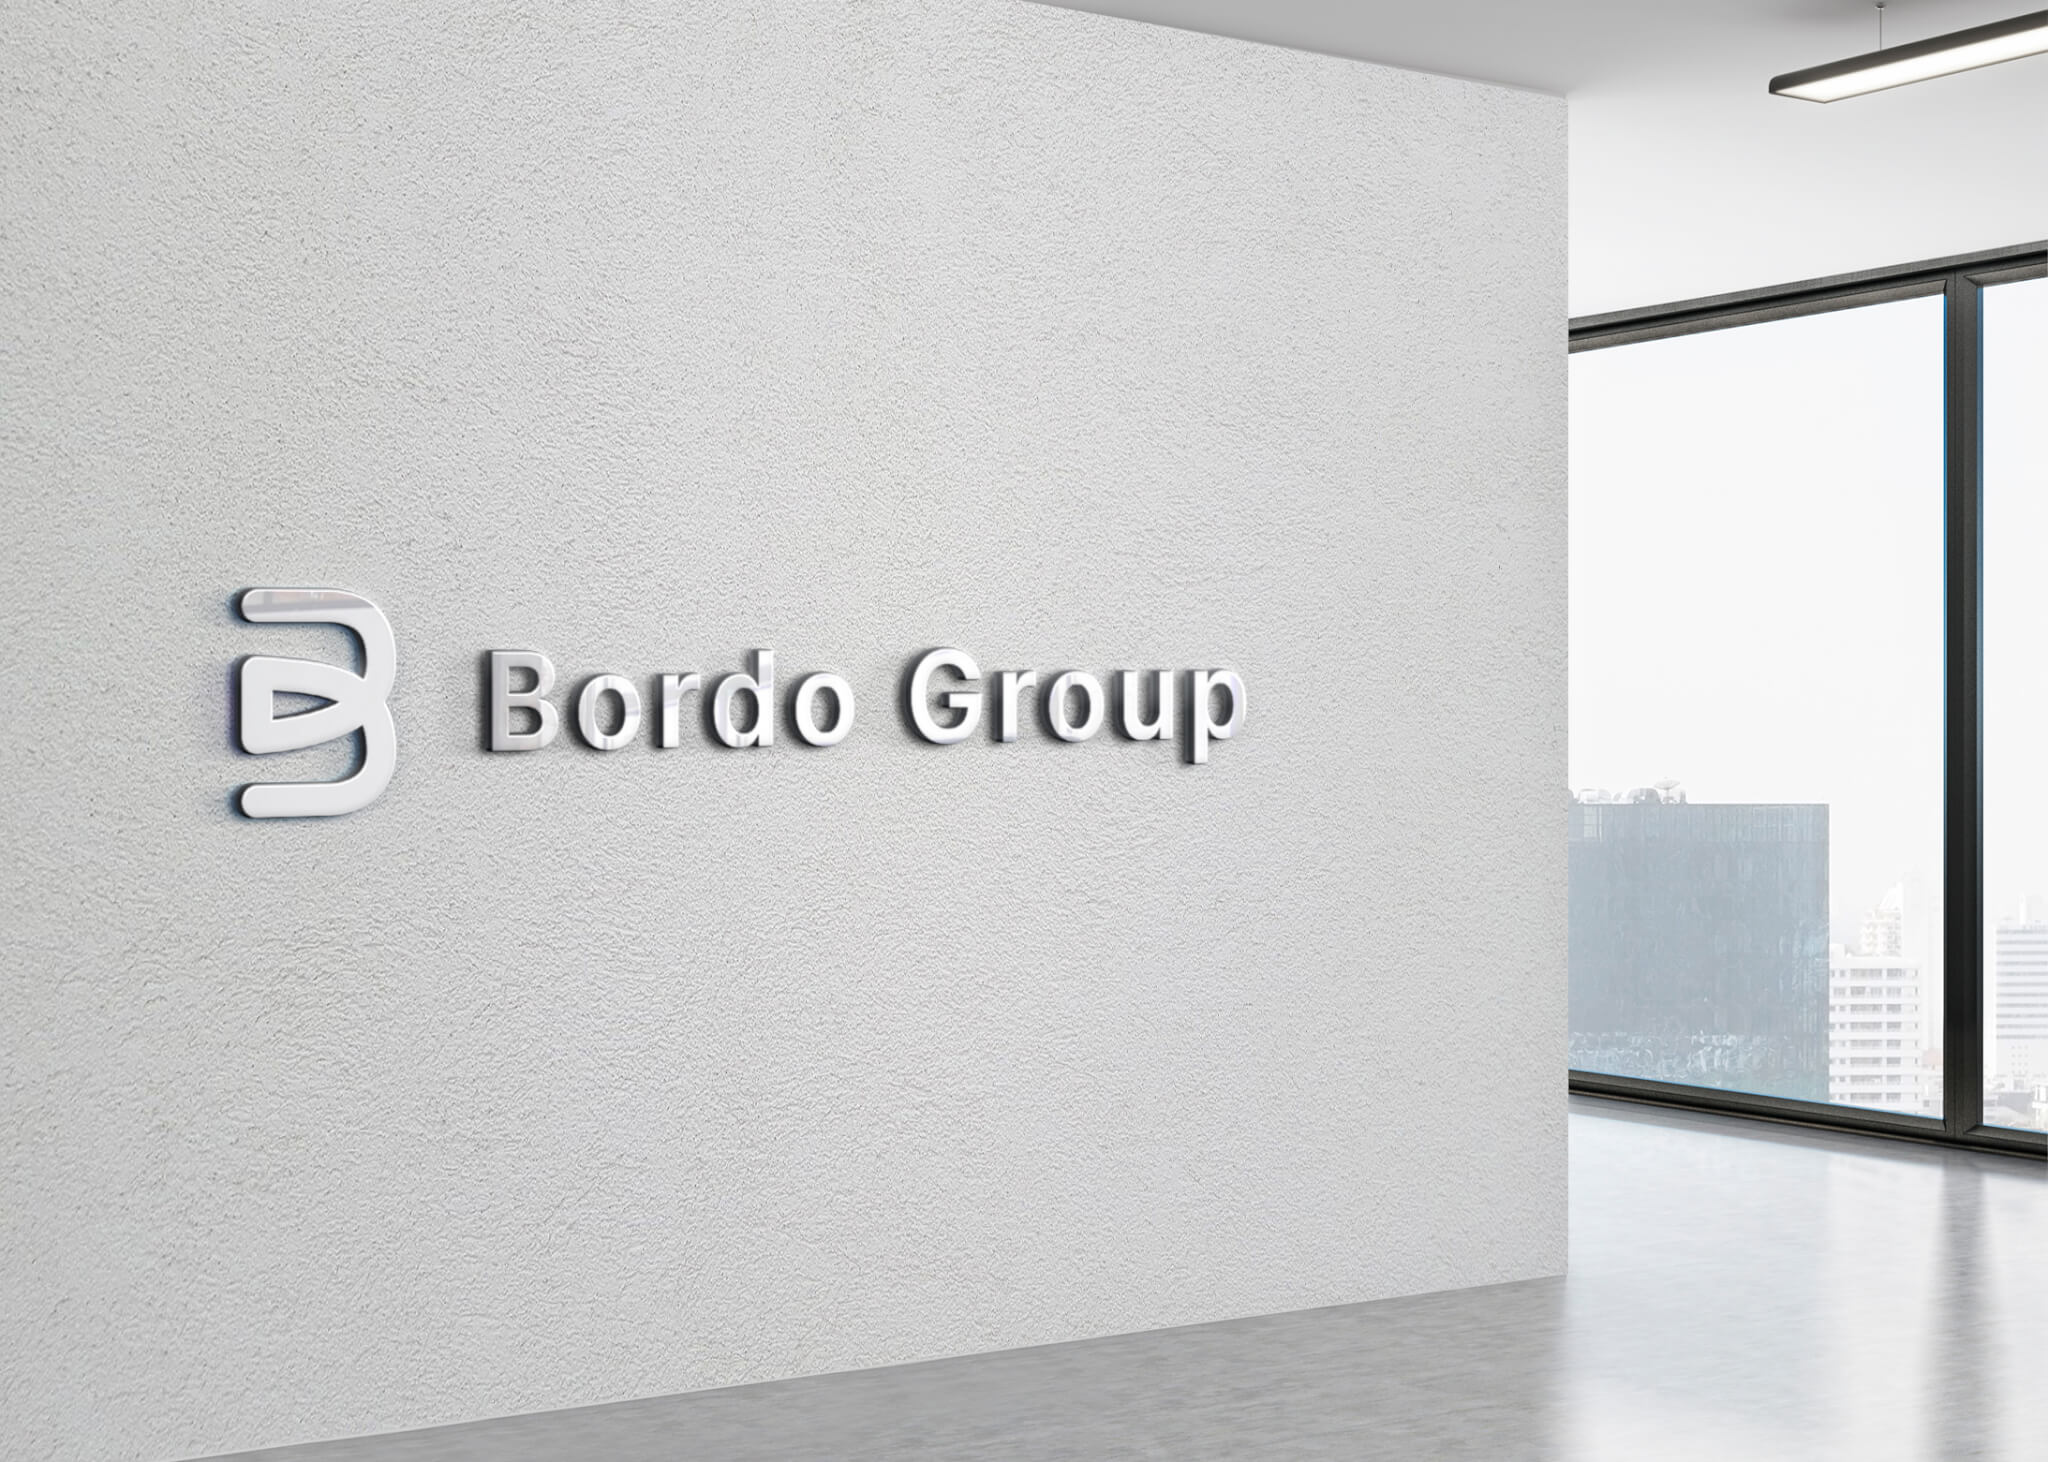 Bordo Group